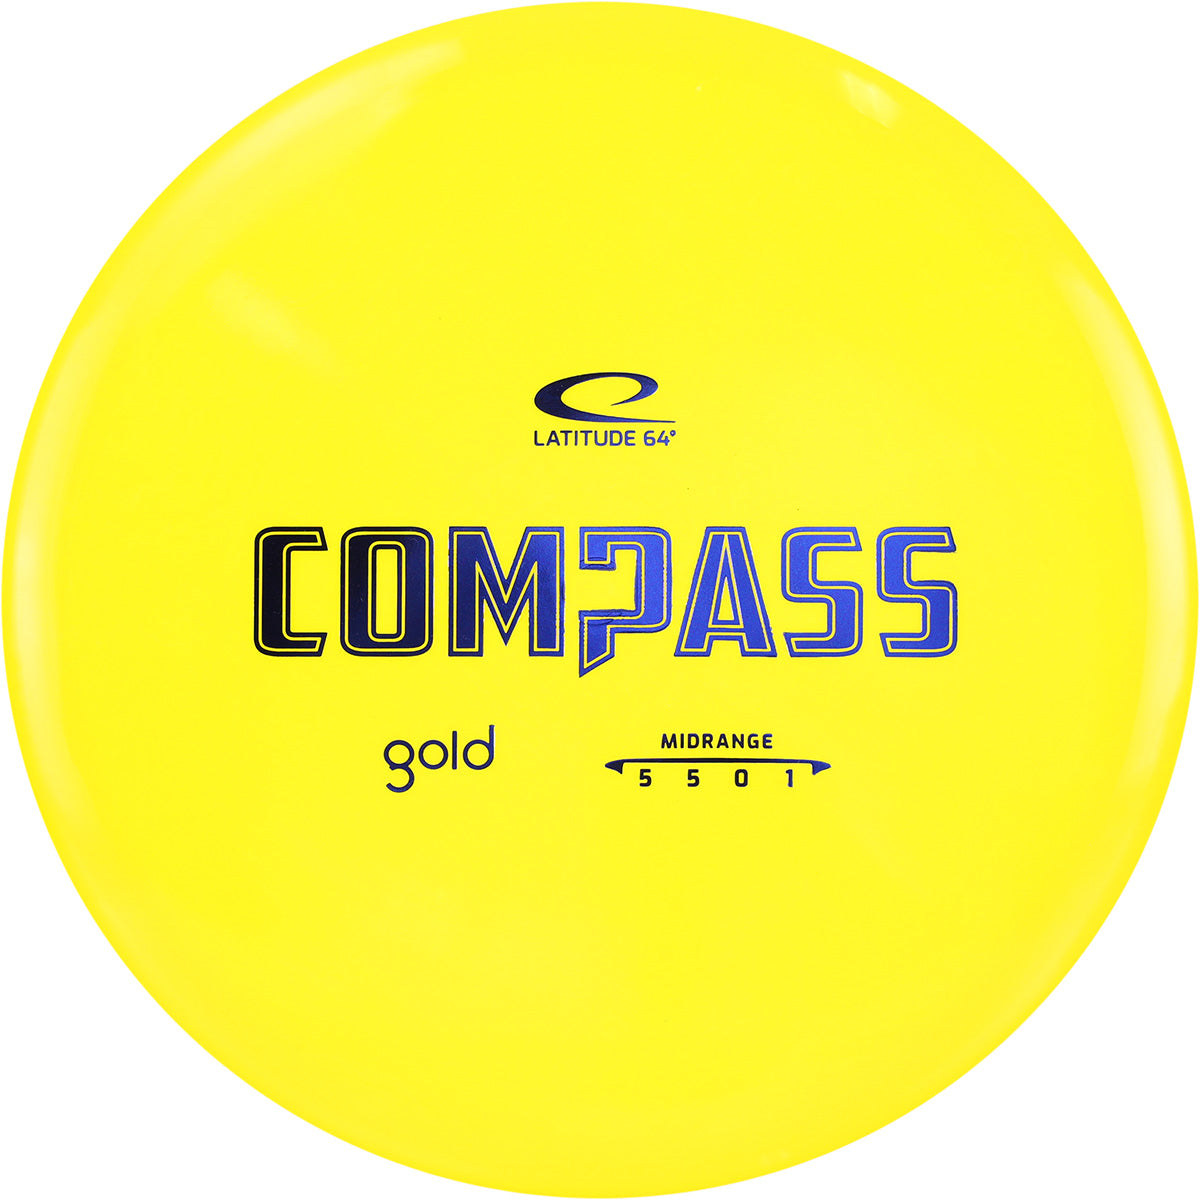 Gold Compass (6613580415041)